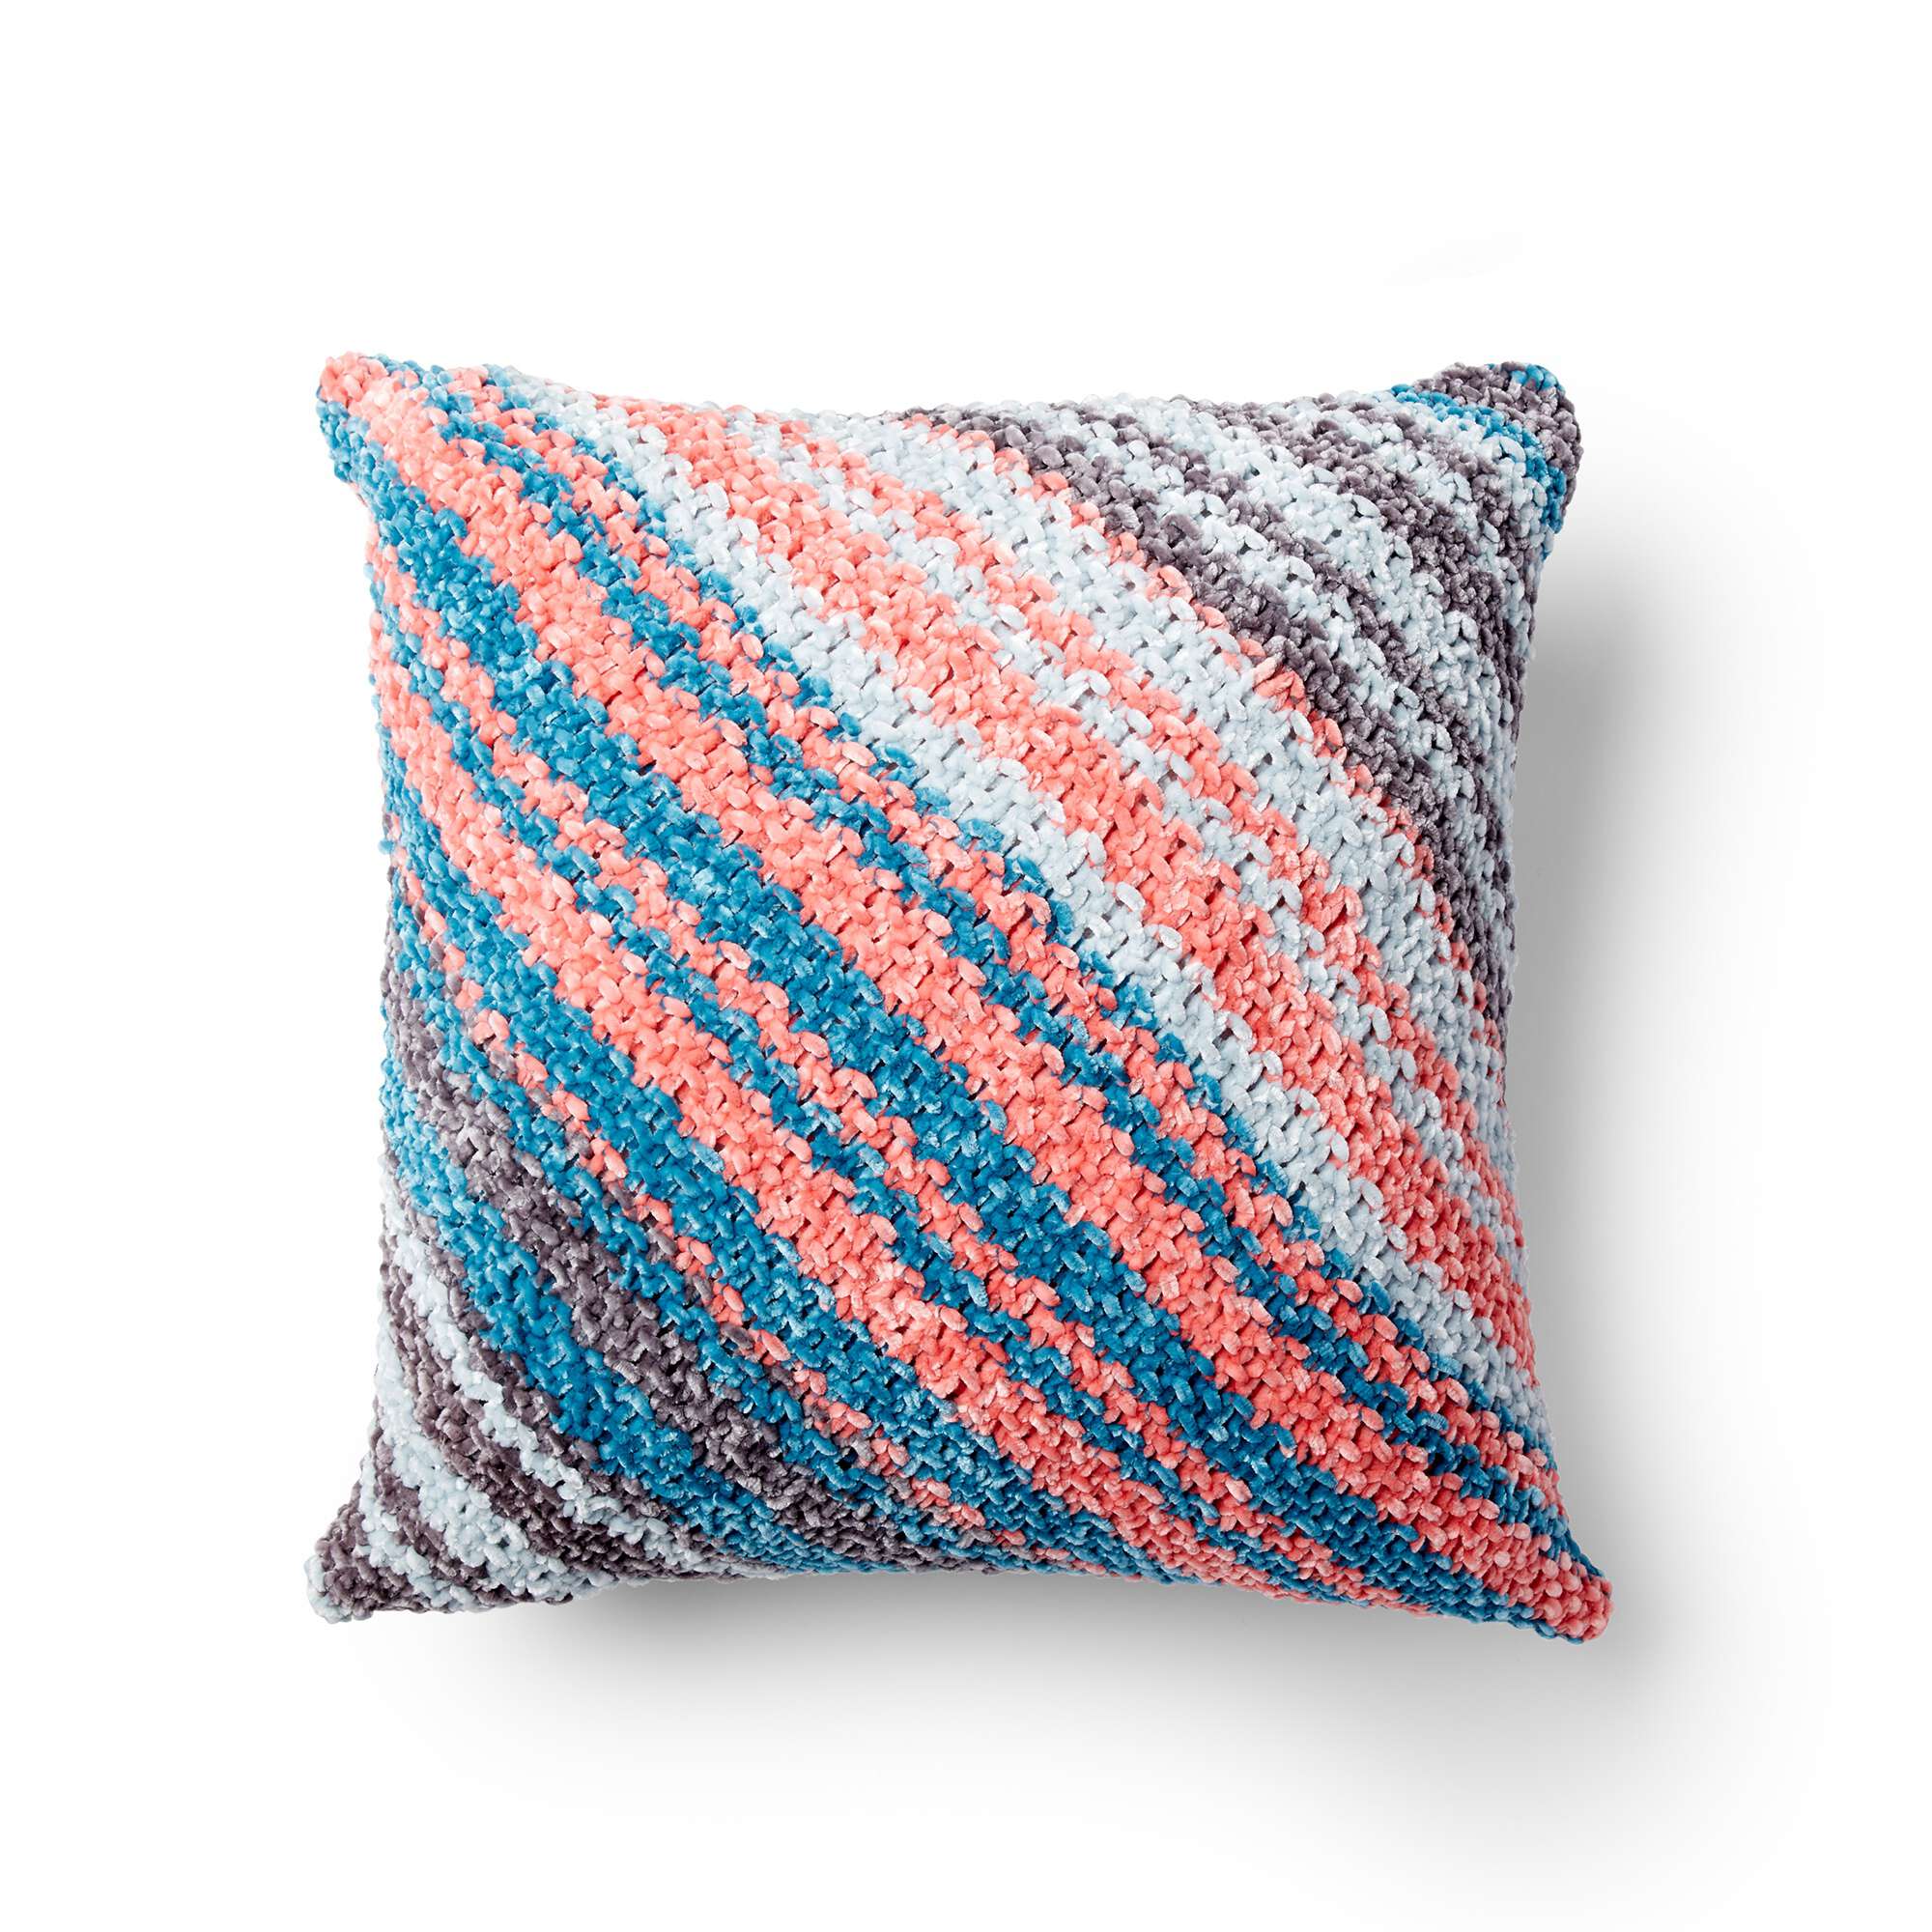 VELVET KNIT PILLOW FINISHING + TASSELS Bernat Stitch Along, FINAL PILLOW  STITCH ALONG! Knitting Clue #3: Velvet Knit Pillow Finishing and Tassels  DOWNLOAD PATTERN:  This, By  Studio Knit